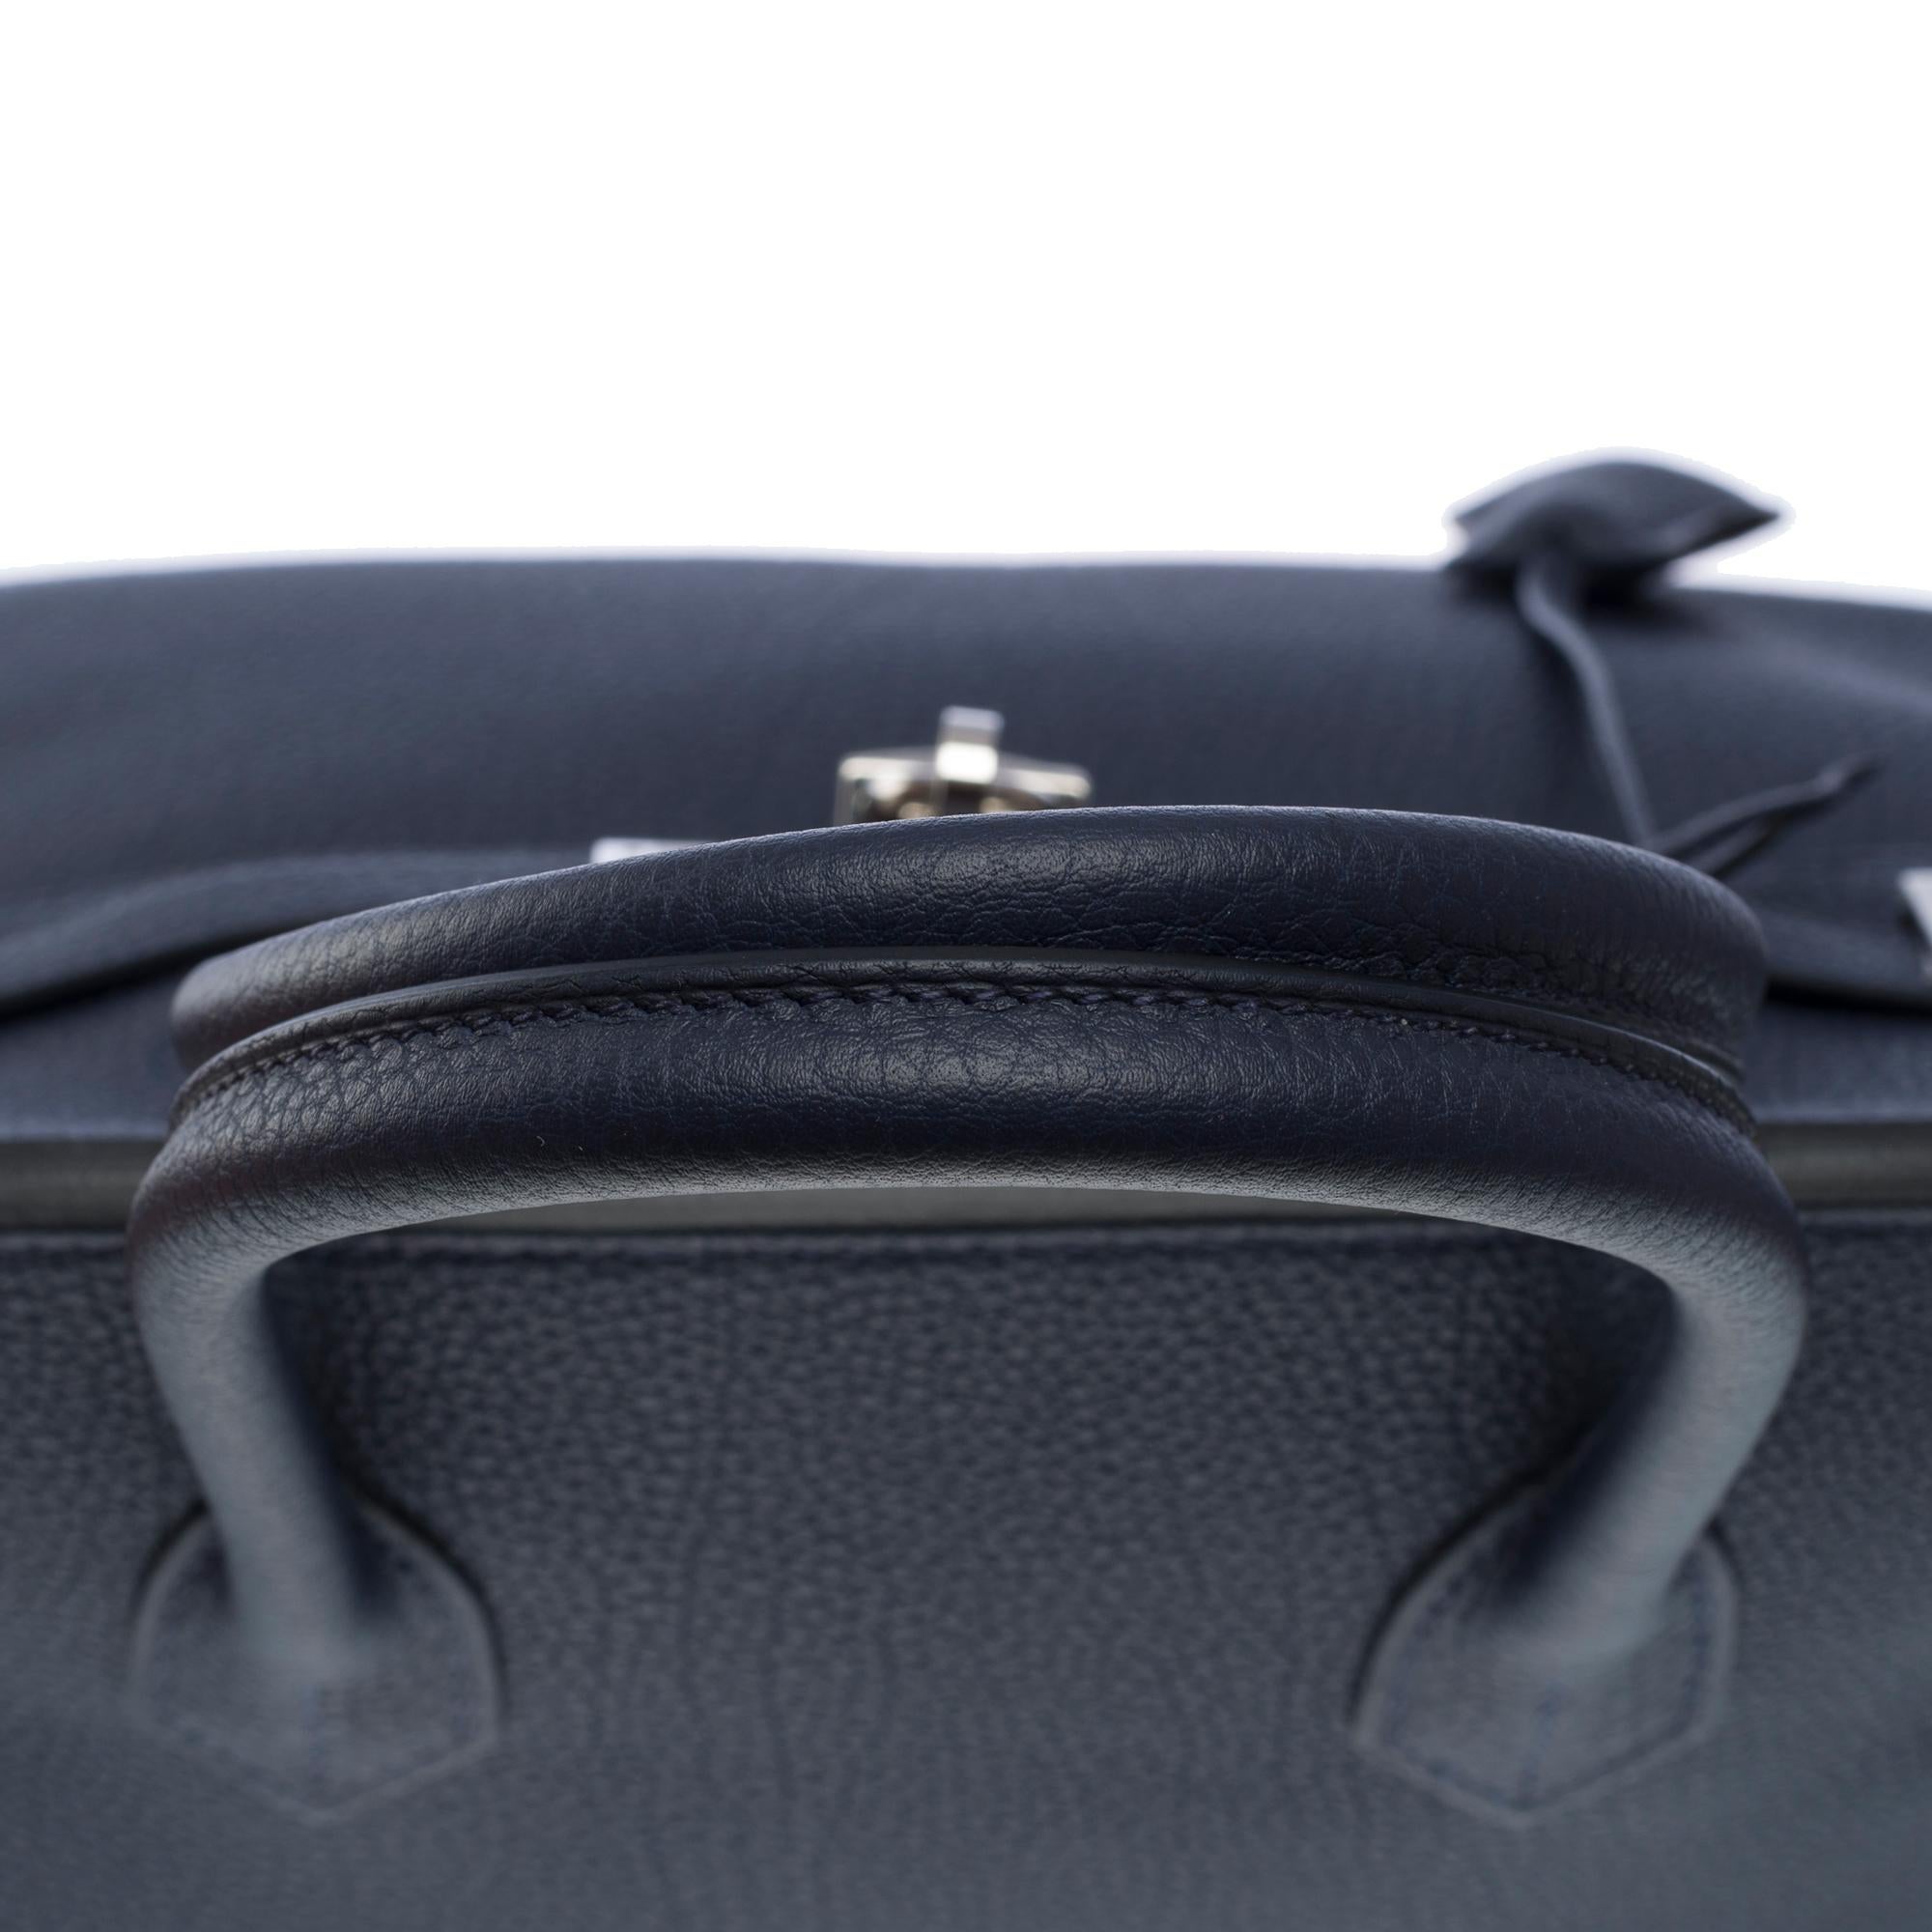 Hermes Birkin 30 handbag in Bleu nuit Togo leather, SHW For Sale 6